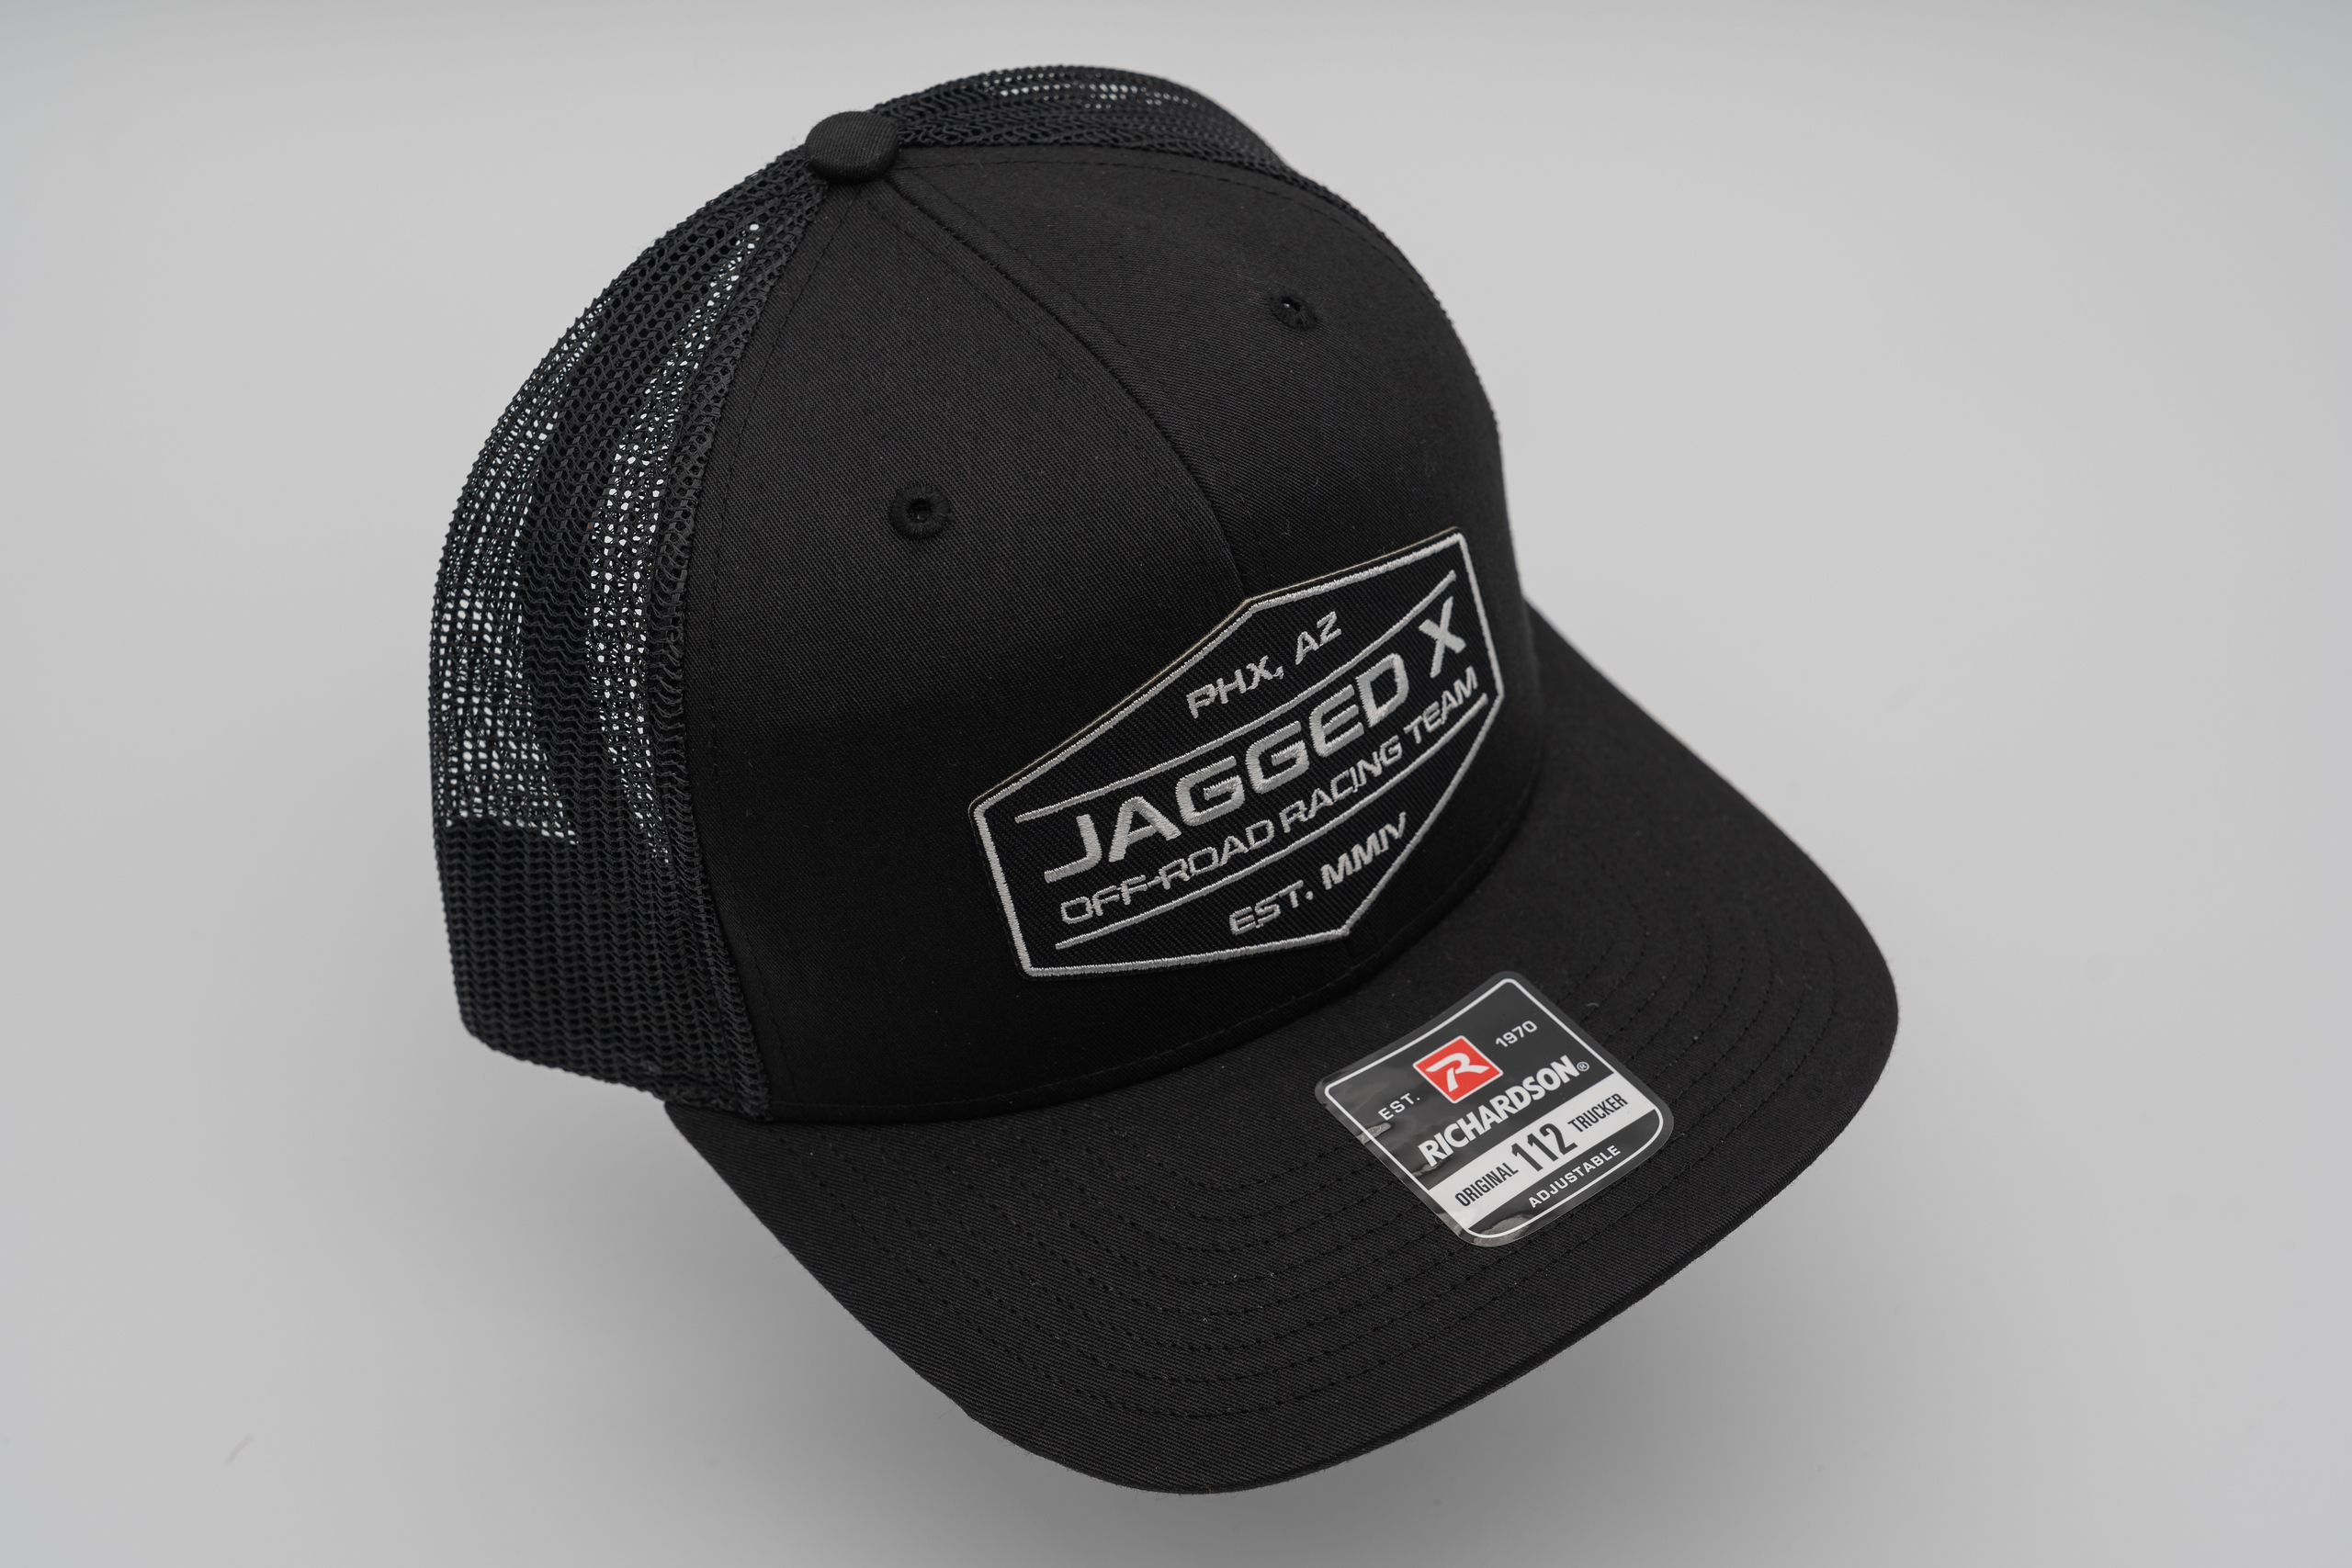 jagged x offroad trucker hat black gray 4